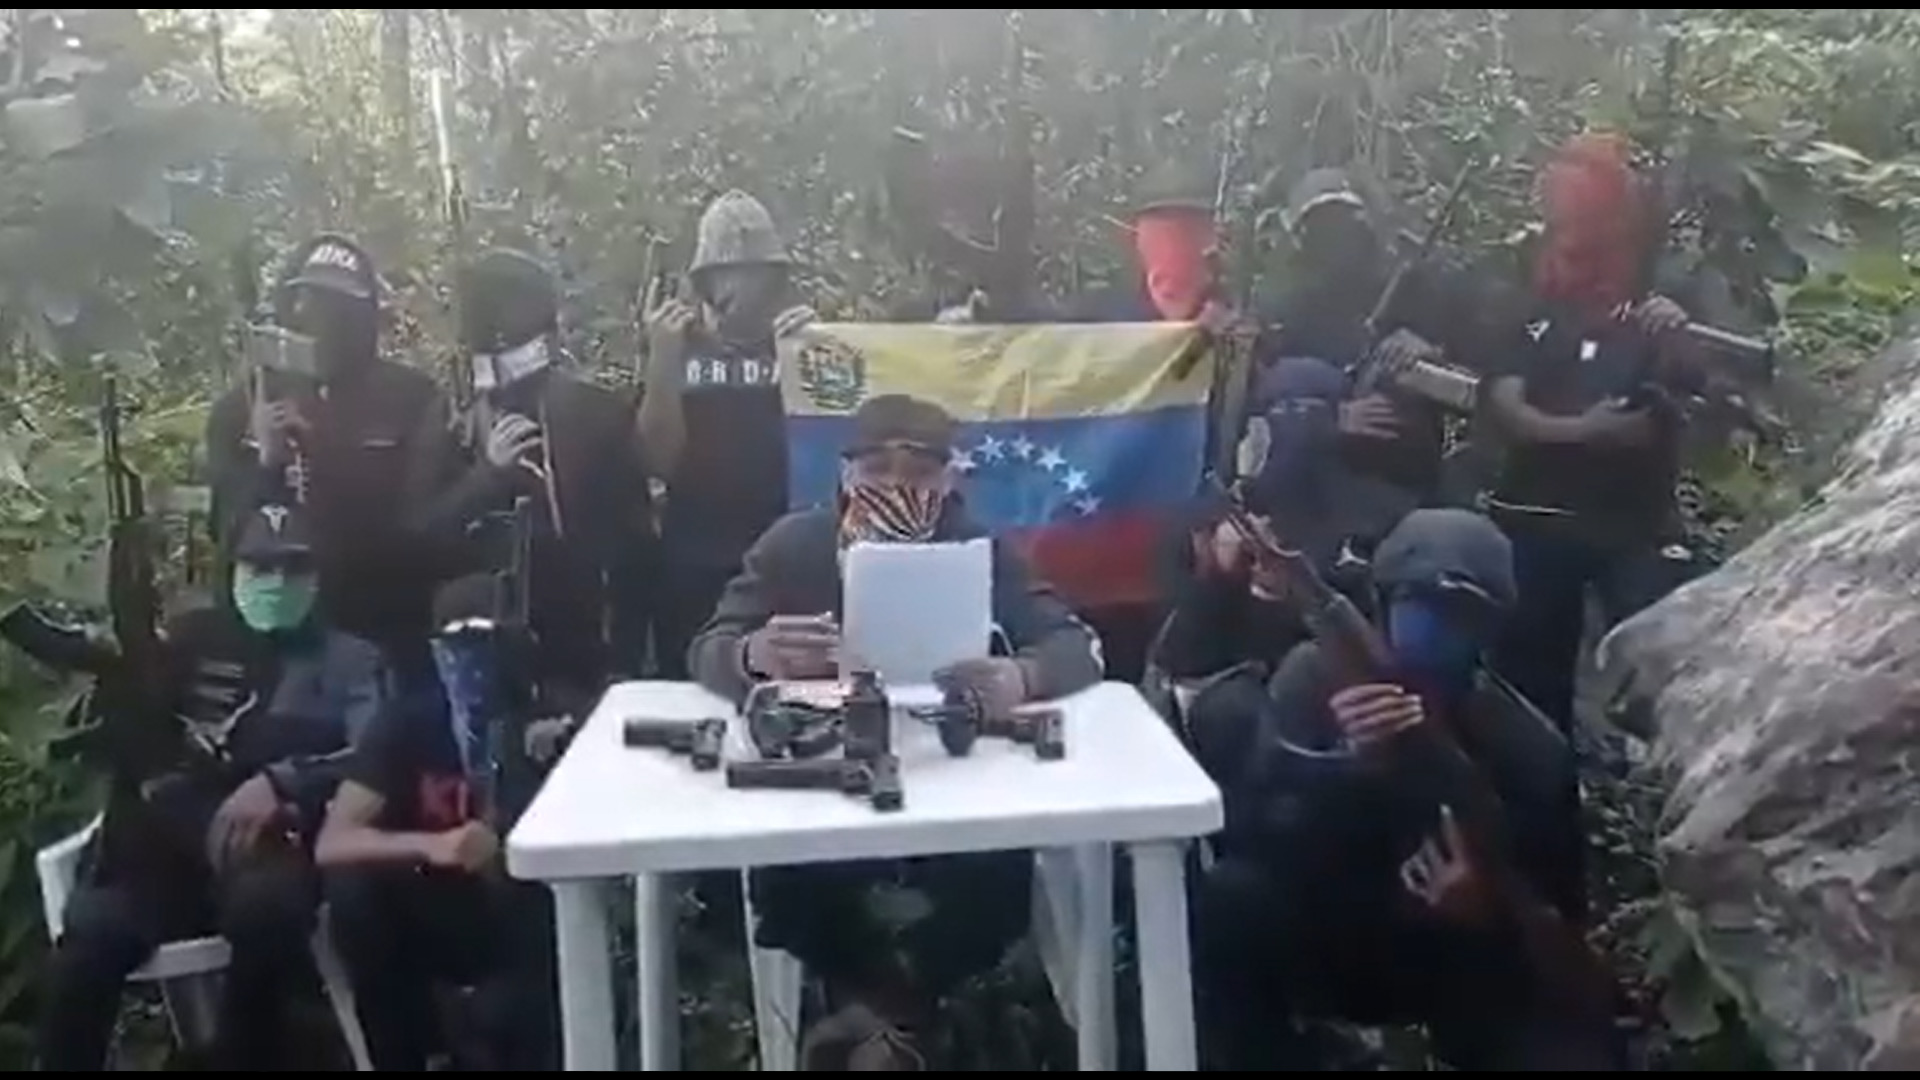 Desplazados por el ELN del Arco Minero, grupos armados por el propio chavismo piden una tregua a Maduro